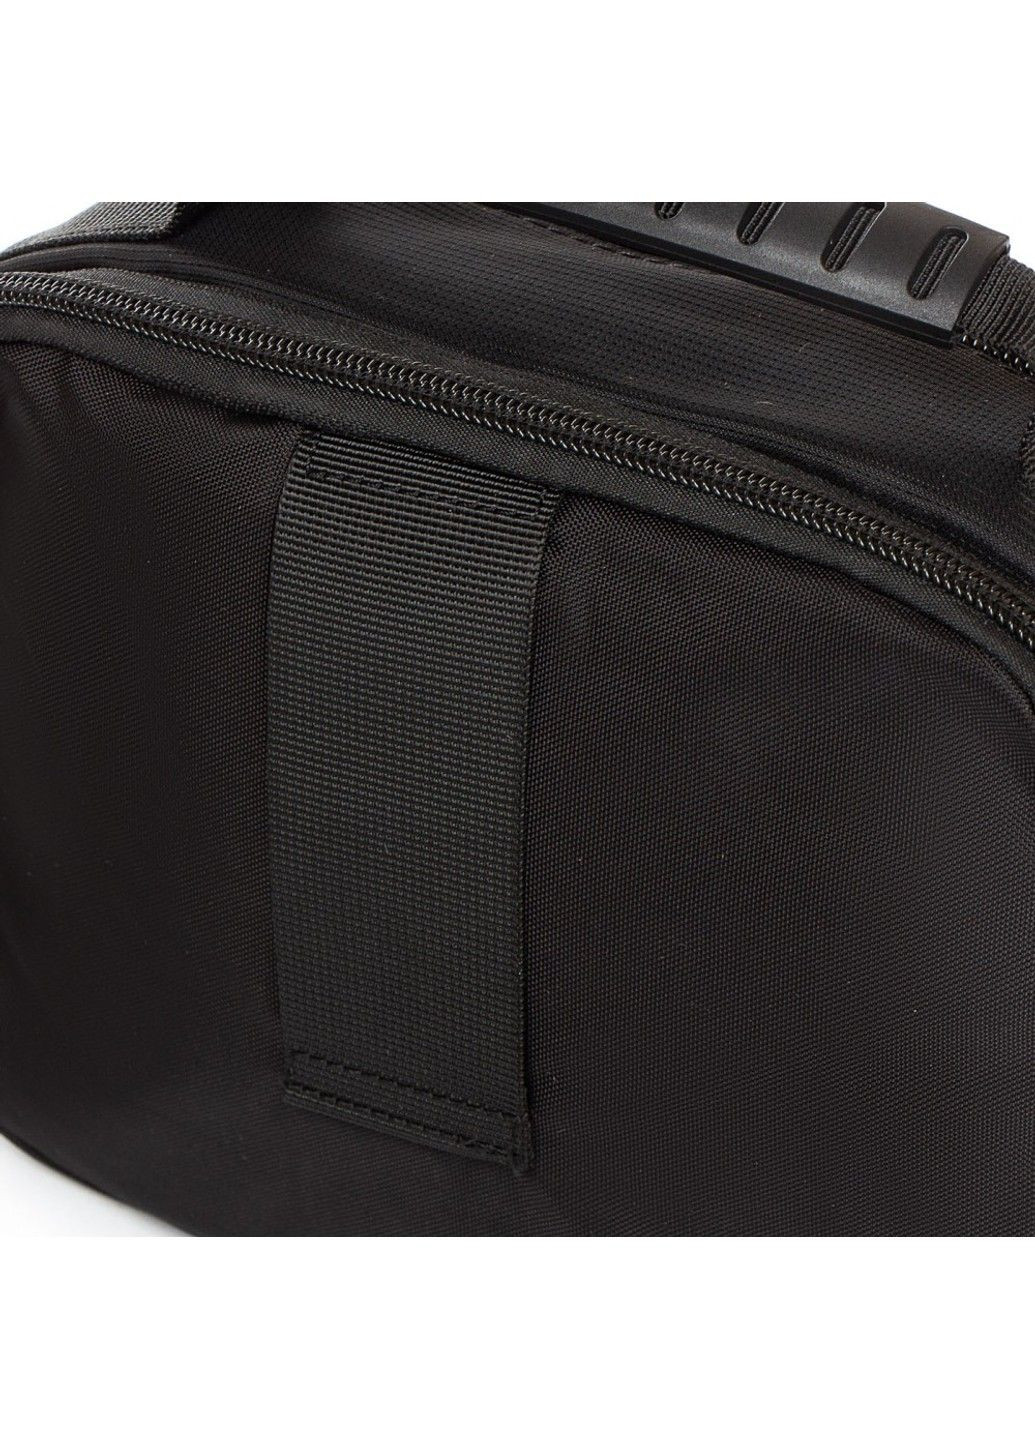 Мужская тканевая сумка через плечо 82051 black Lanpad (284667905)